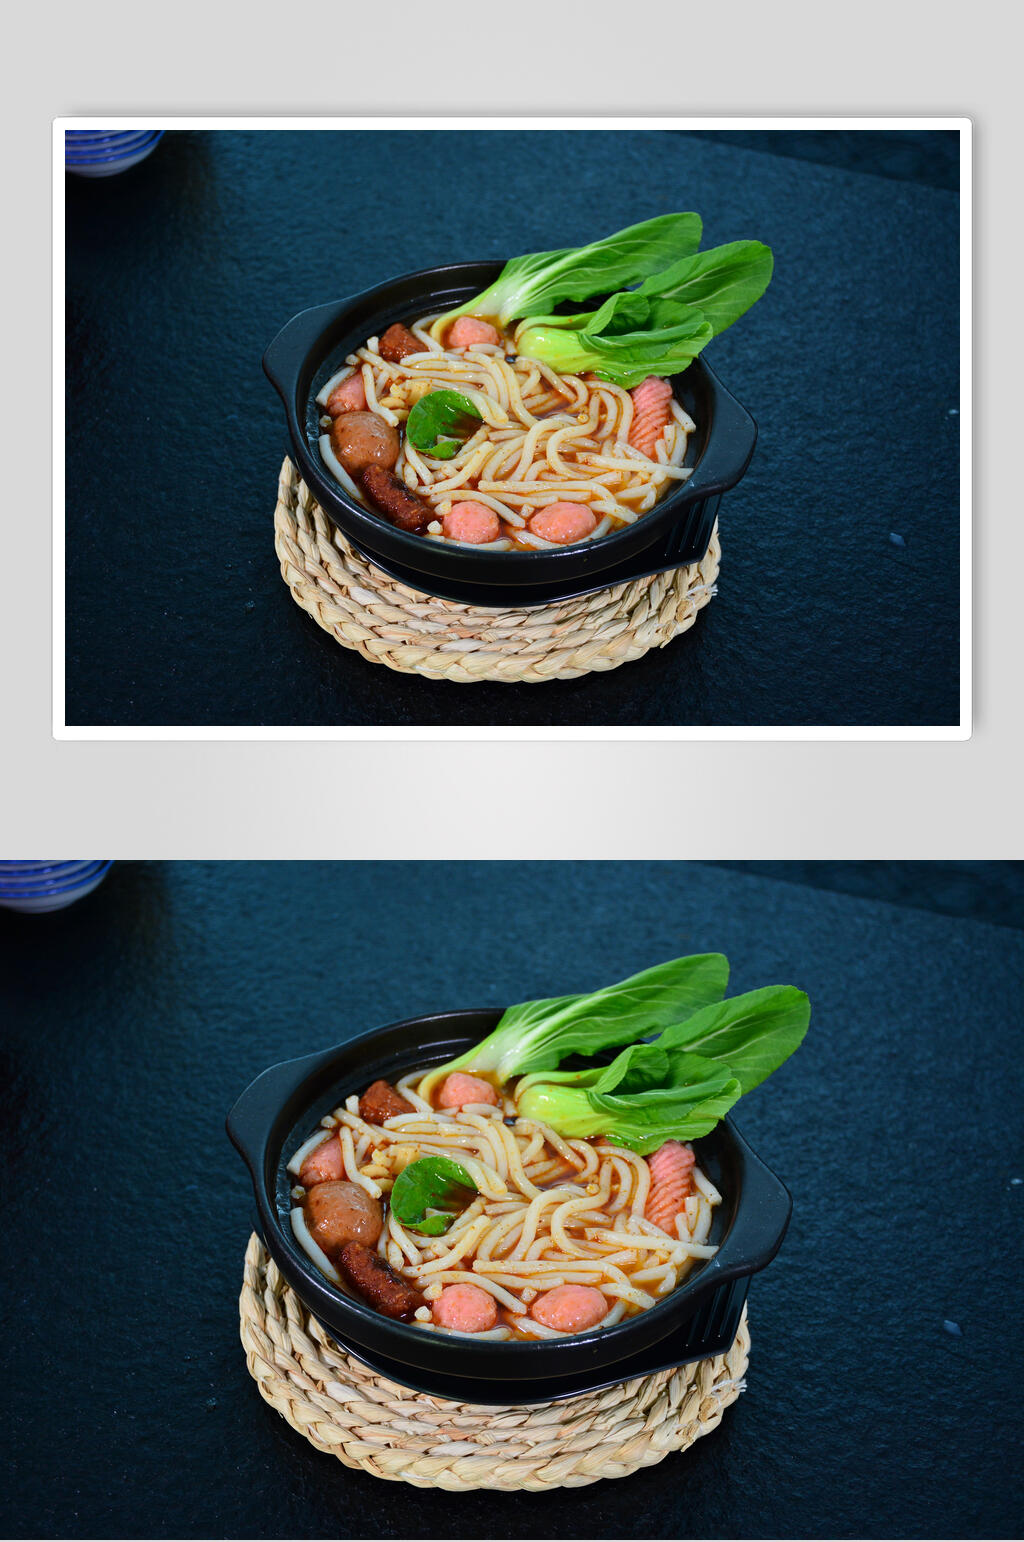 砂锅米线美食摄影图片